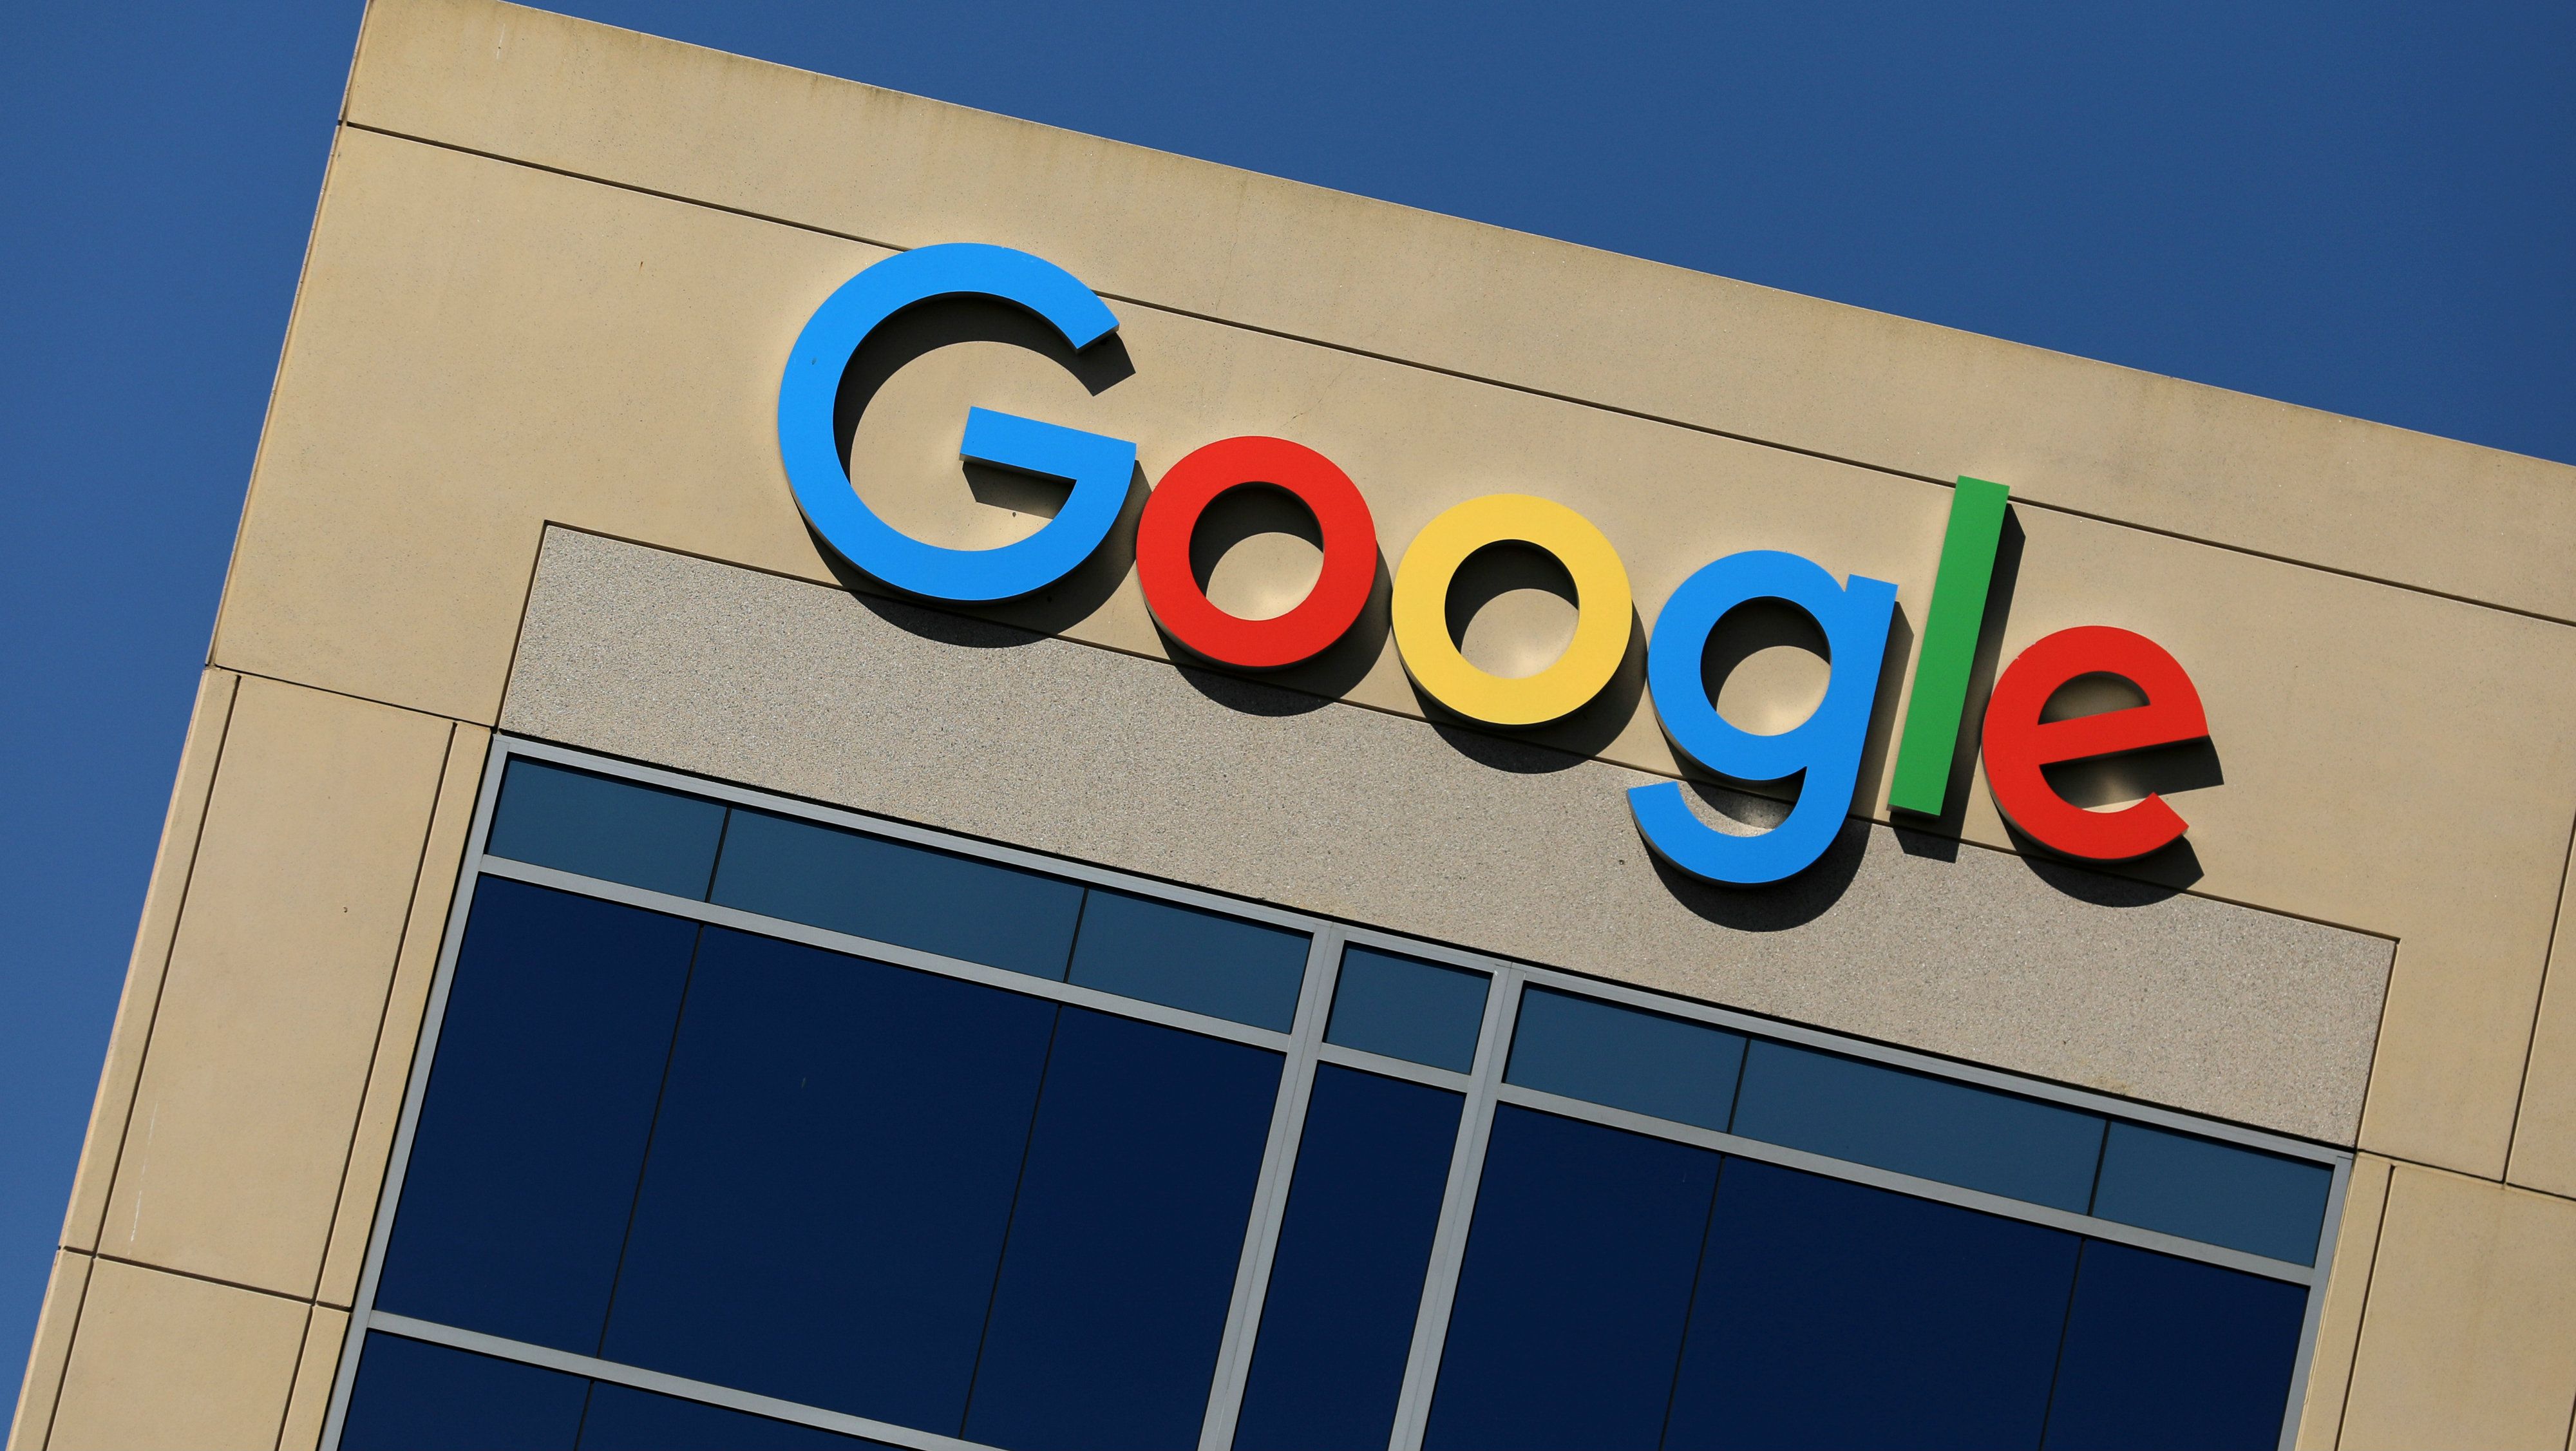 $118 млн компания Google выплатит за то, что "обижала" своих сотрудниц  